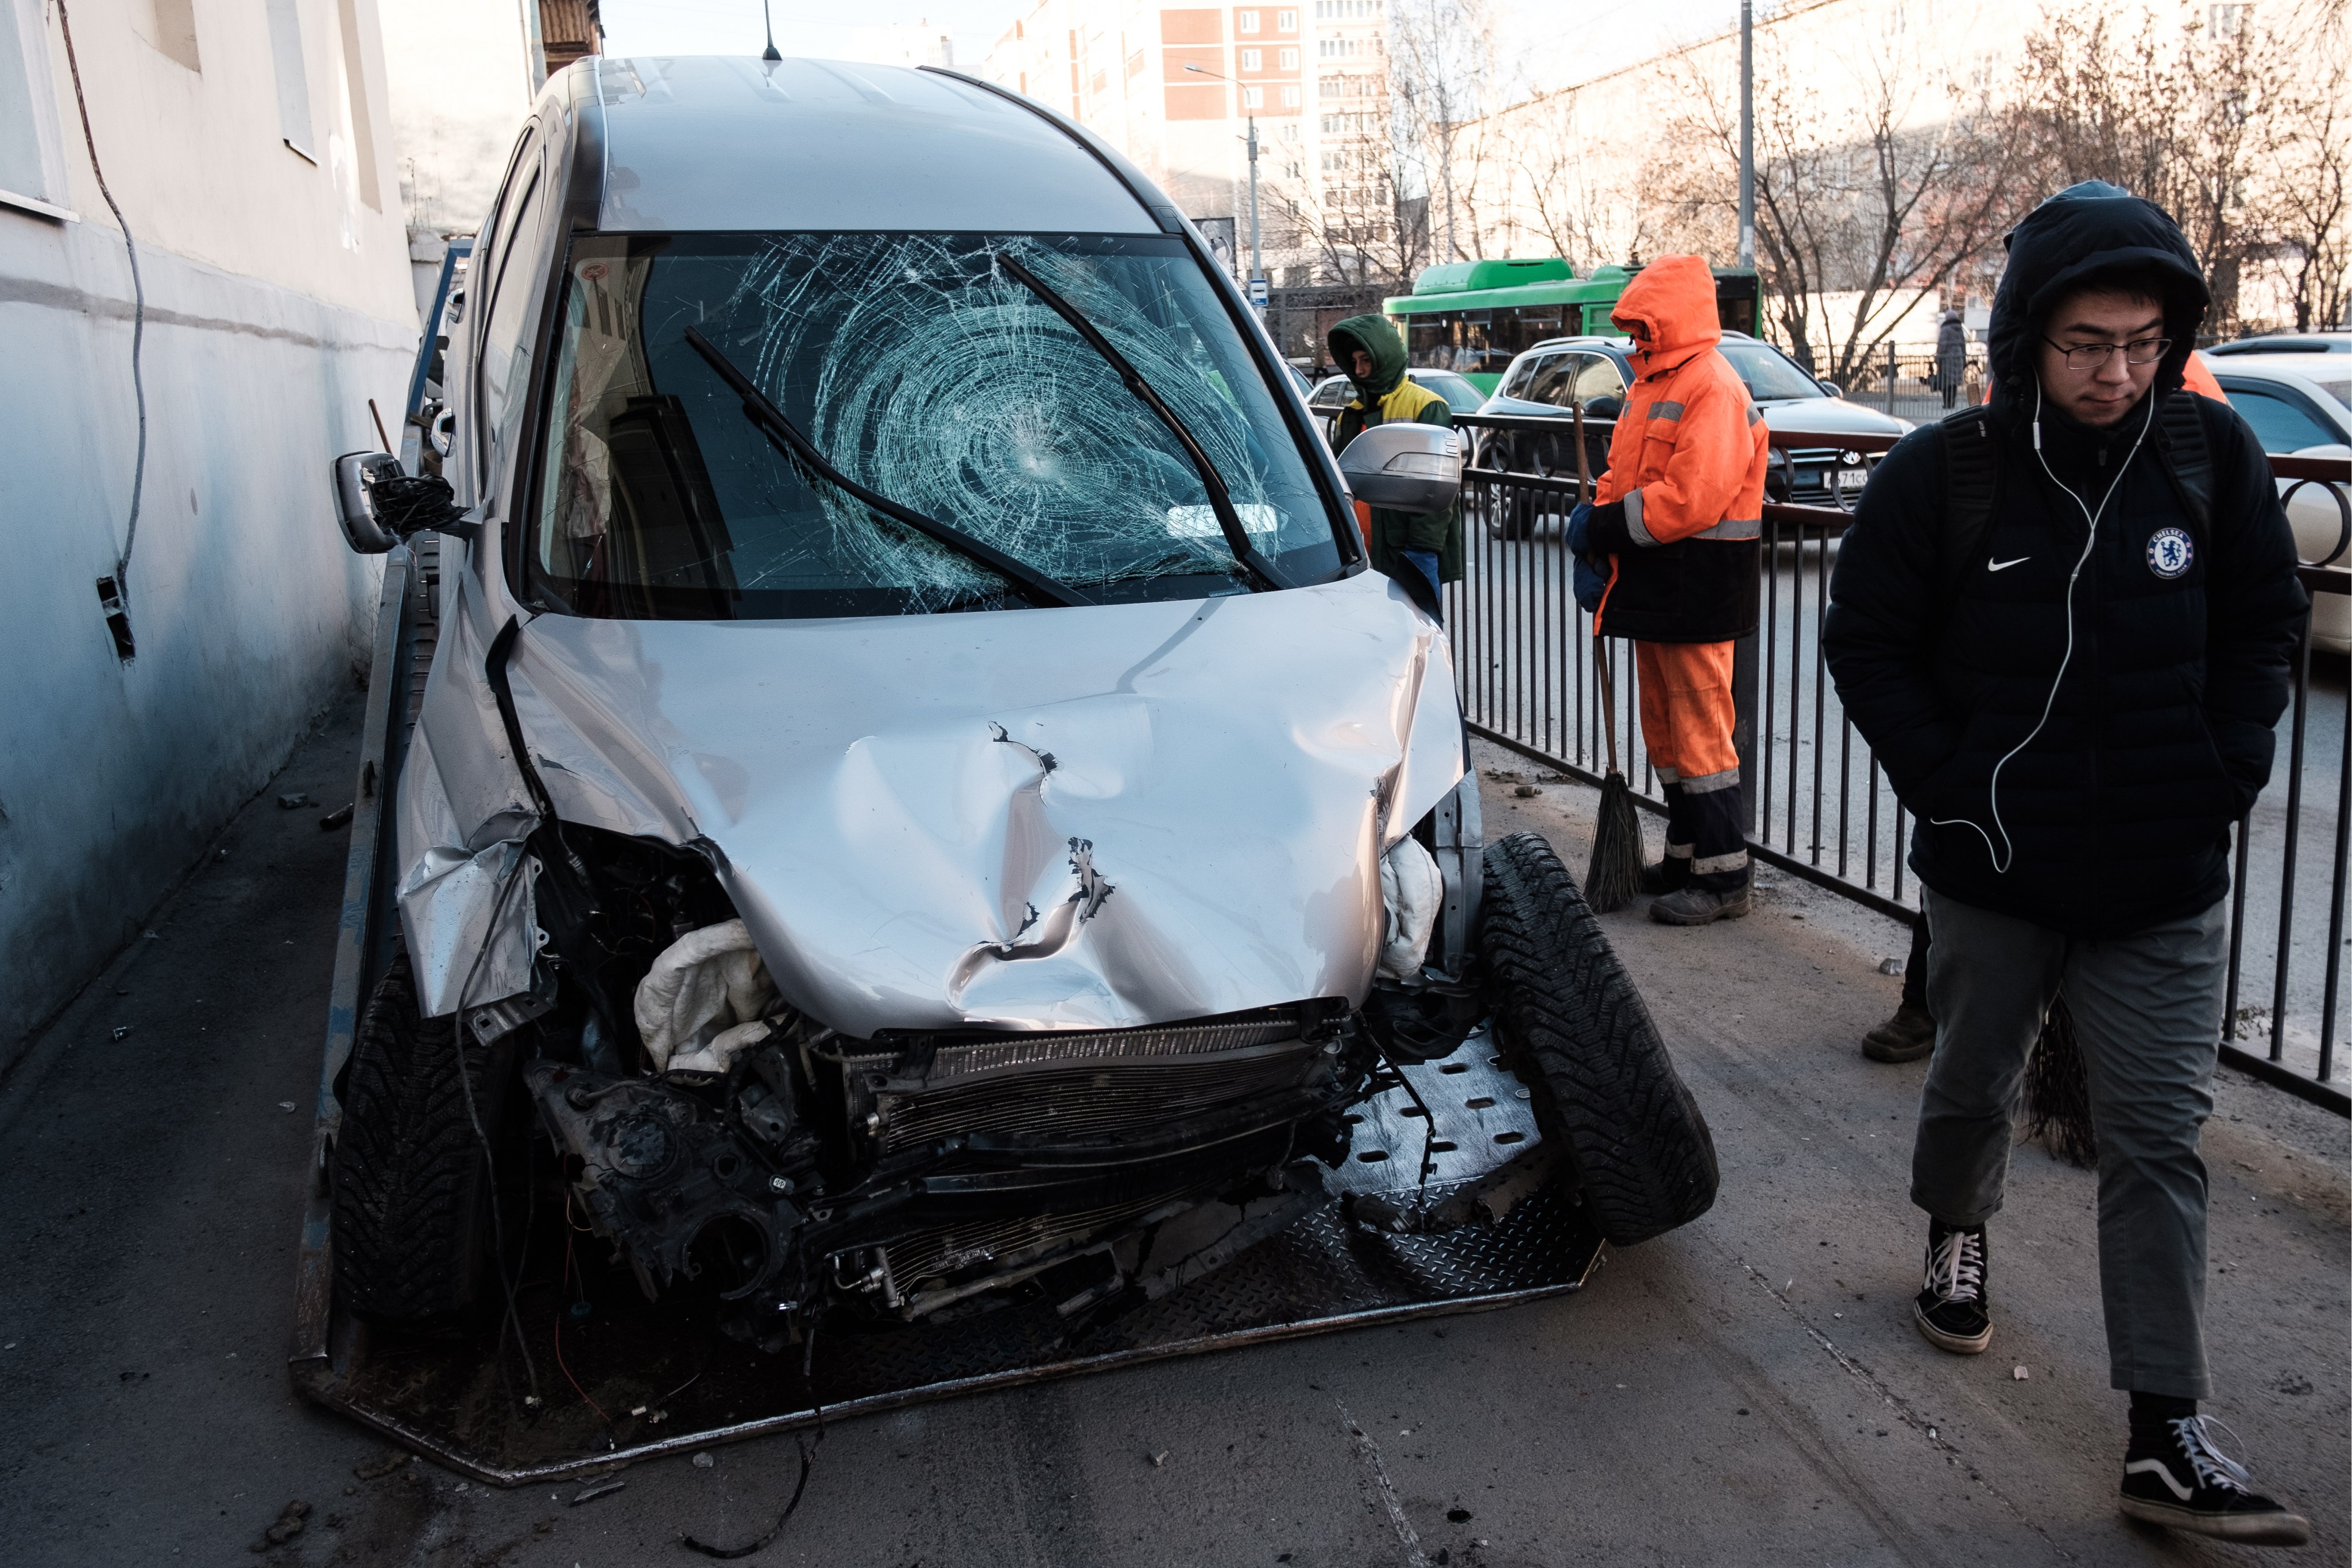 A car that hit pedestrians. What happens when an autonomous vehicle does the same, Simon Chesterman asks. Photo: Donat Sorokin\TASS via Getty Images